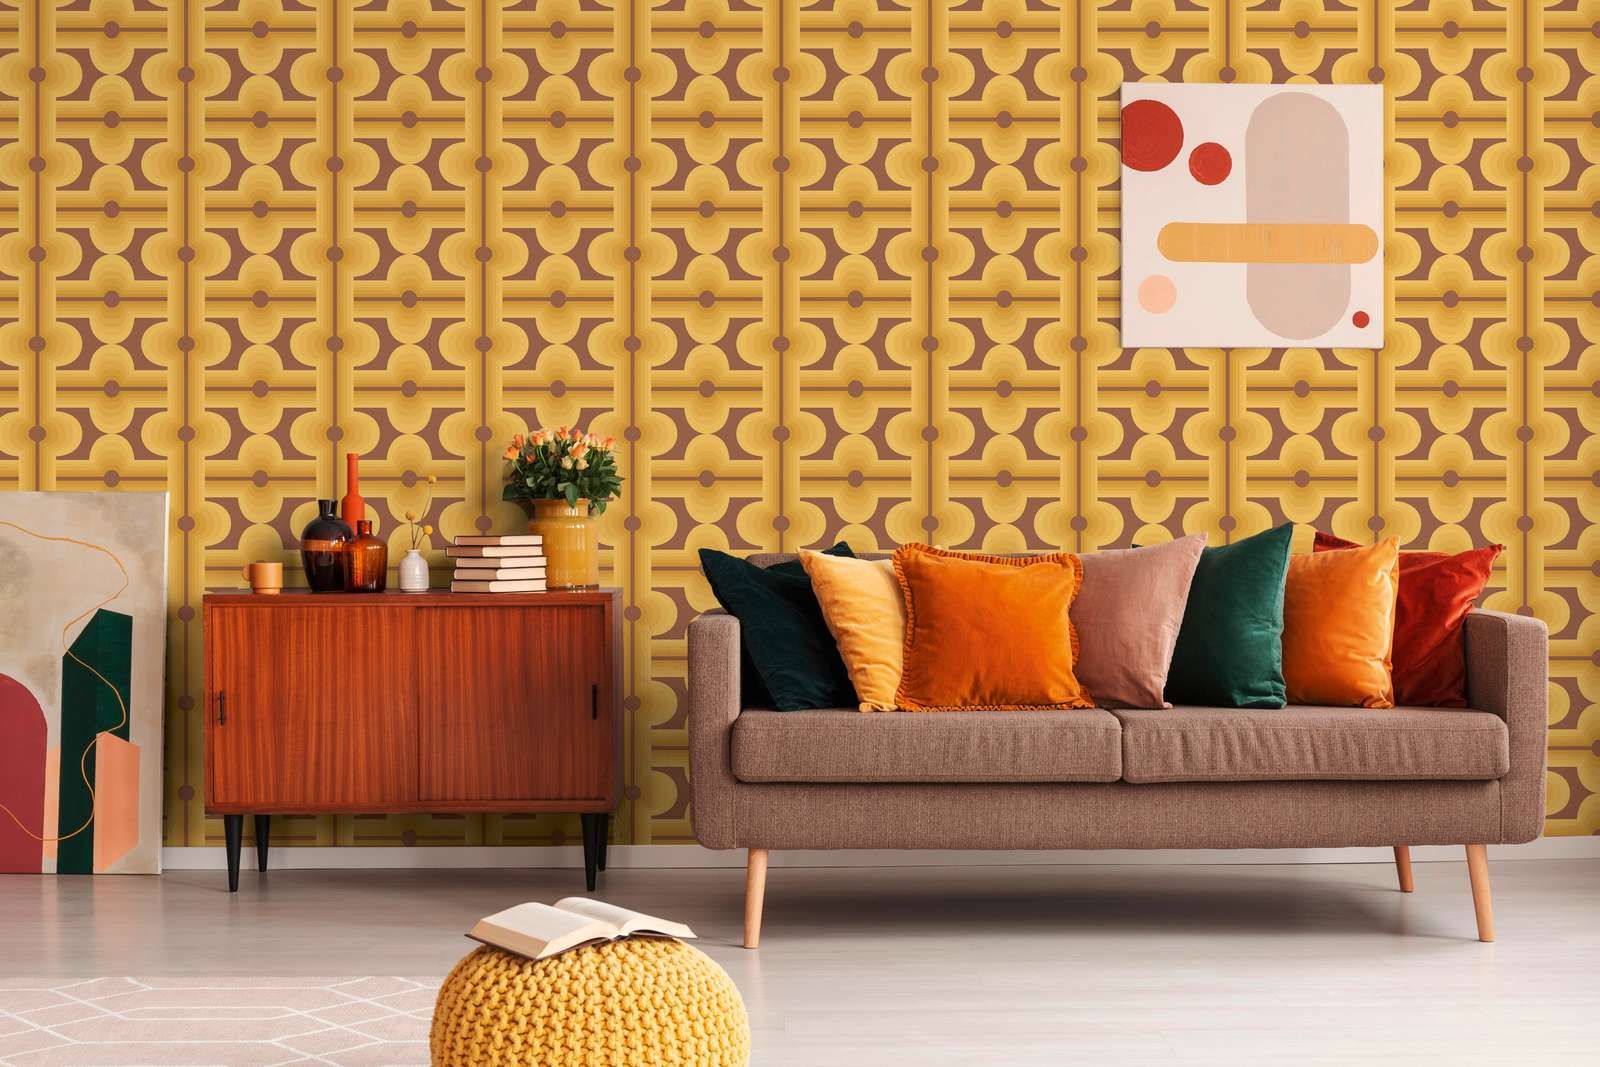             Abstracte patronen op jaren 70 vliesbehang in warme kleuren - bruin, geel, oranje
        